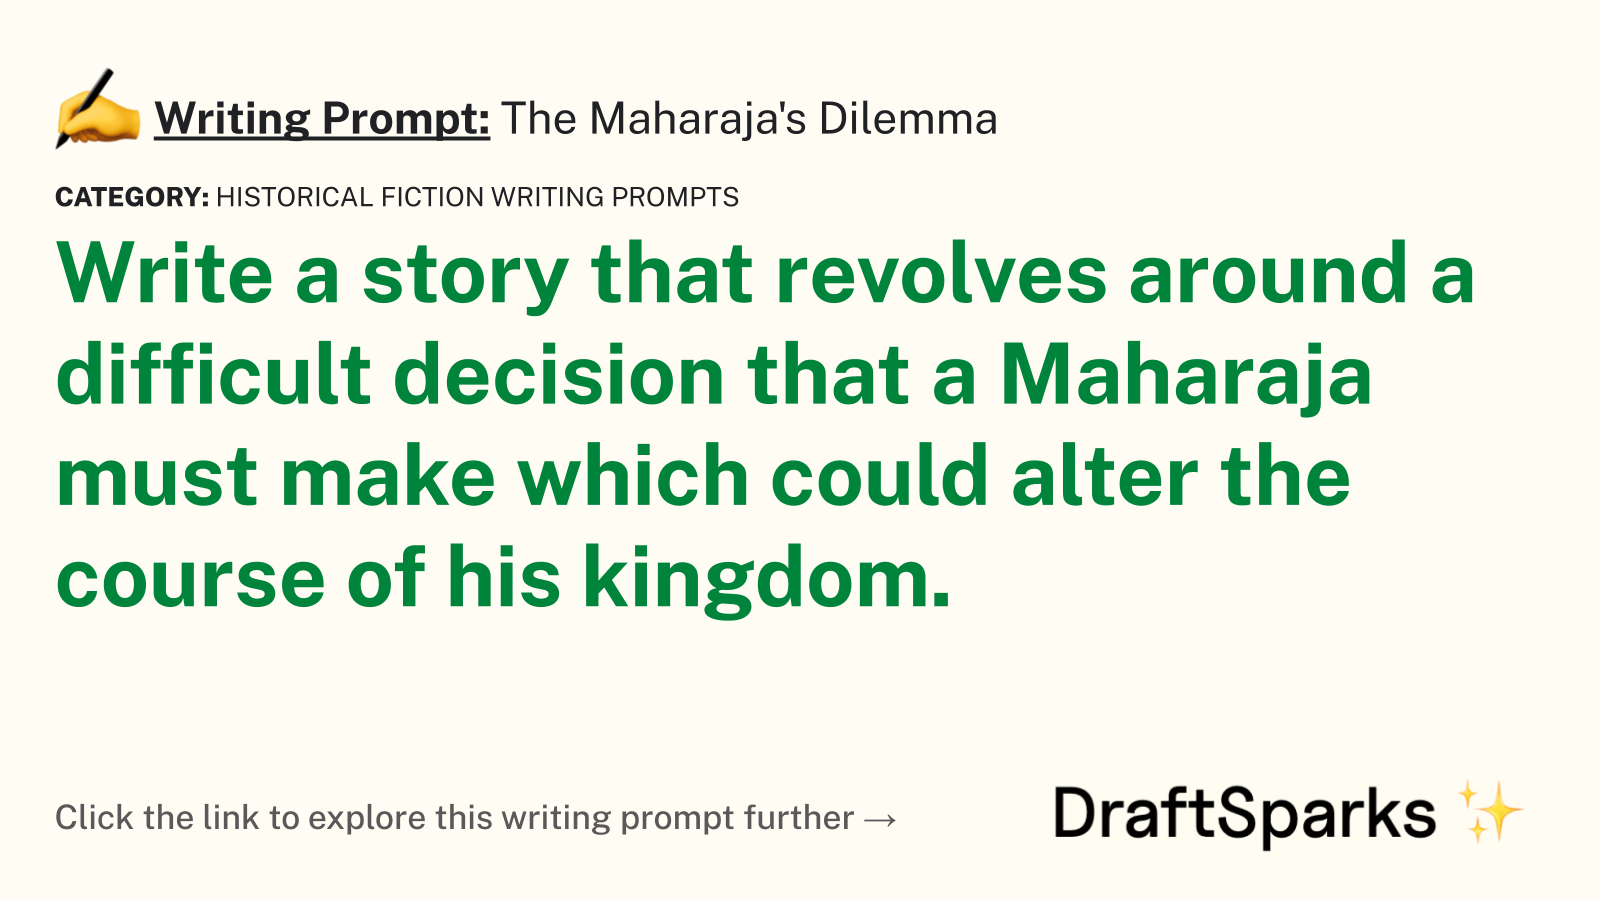 The Maharaja’s Dilemma